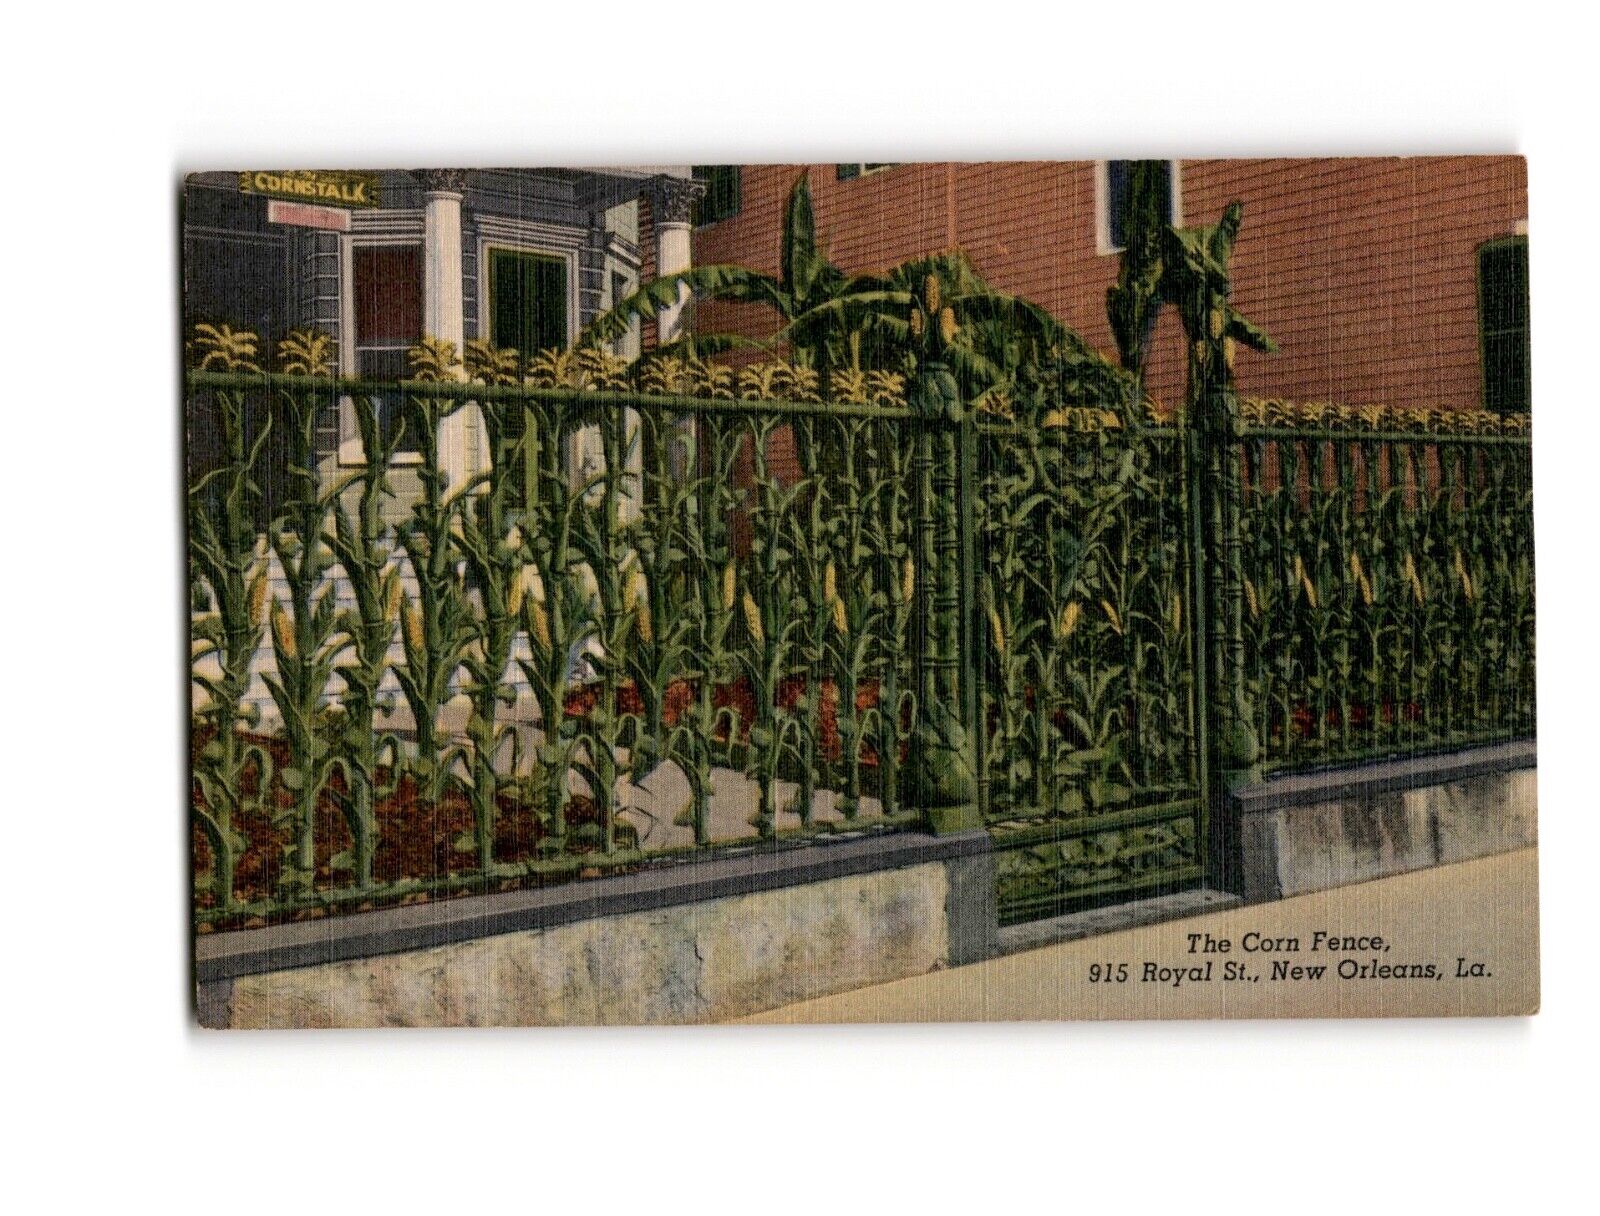 The Corn Fence, 915 Royal St., New Orleans, La. Vintage Linen Posrtcard